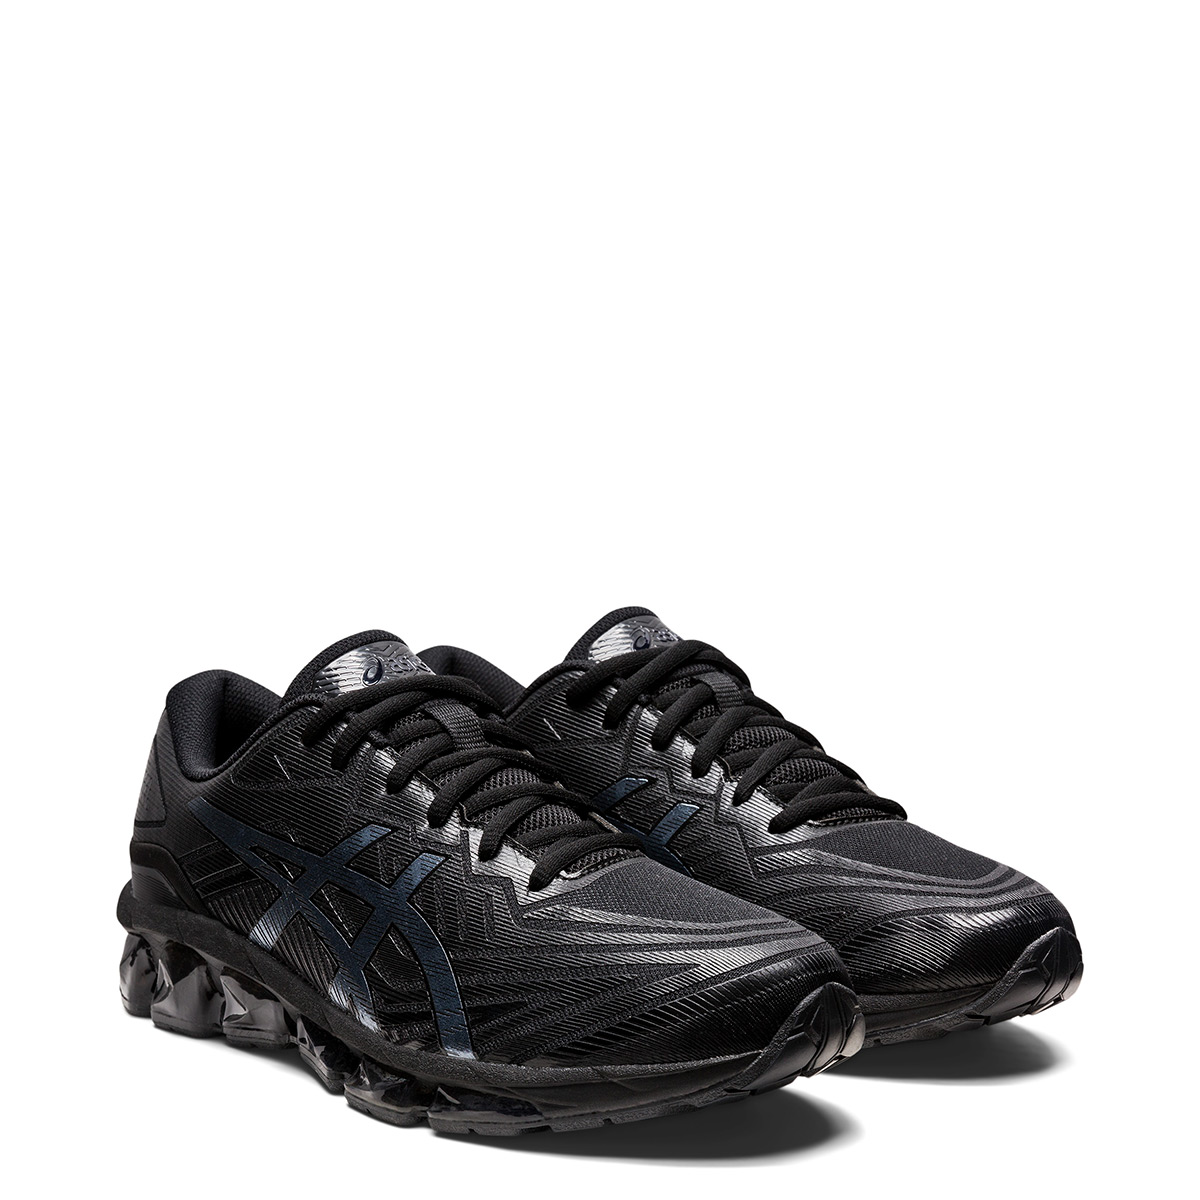 Chaussures de sport homme Asics gel quantum 360 7 gris